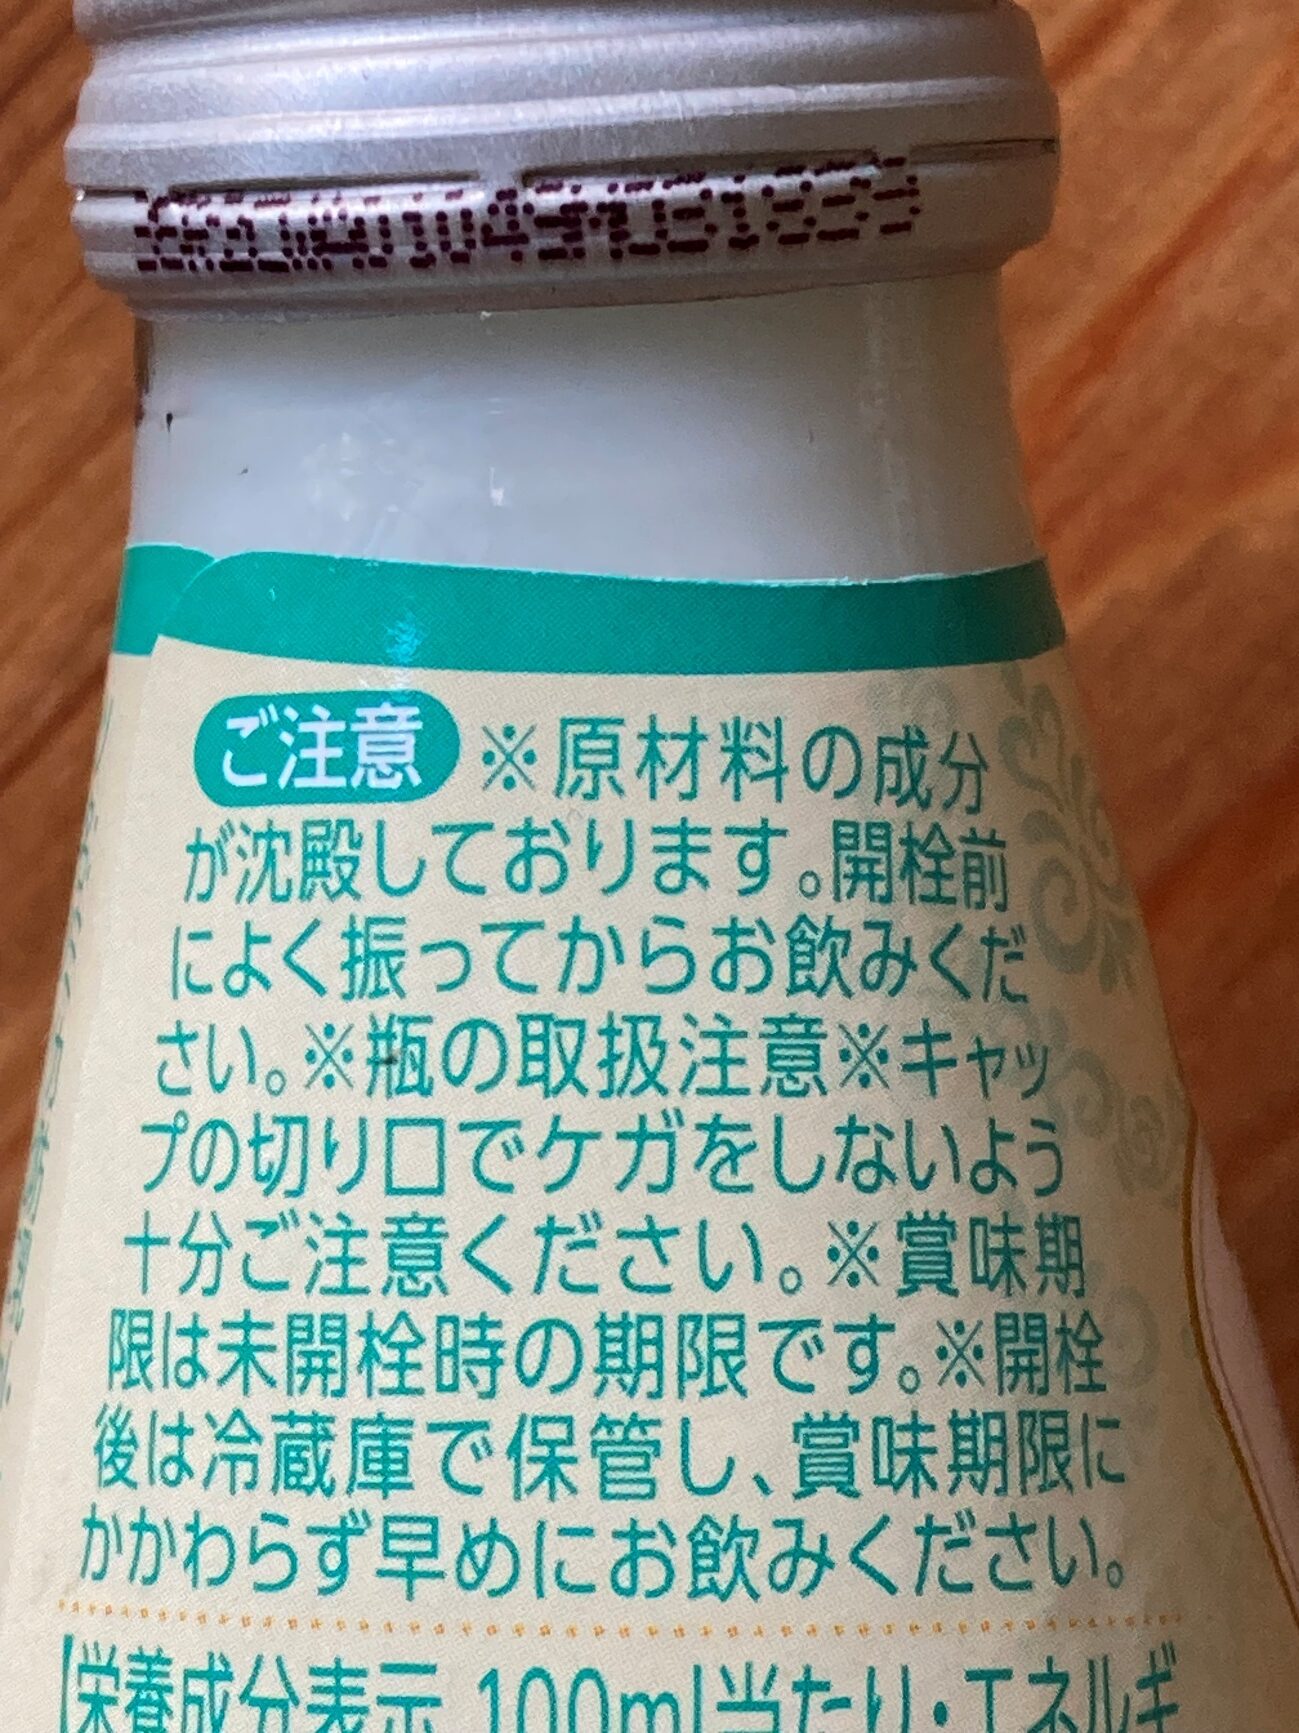 業務スーパーのココナッツミルクドリンクの瓶ラベルに記載されている注意点